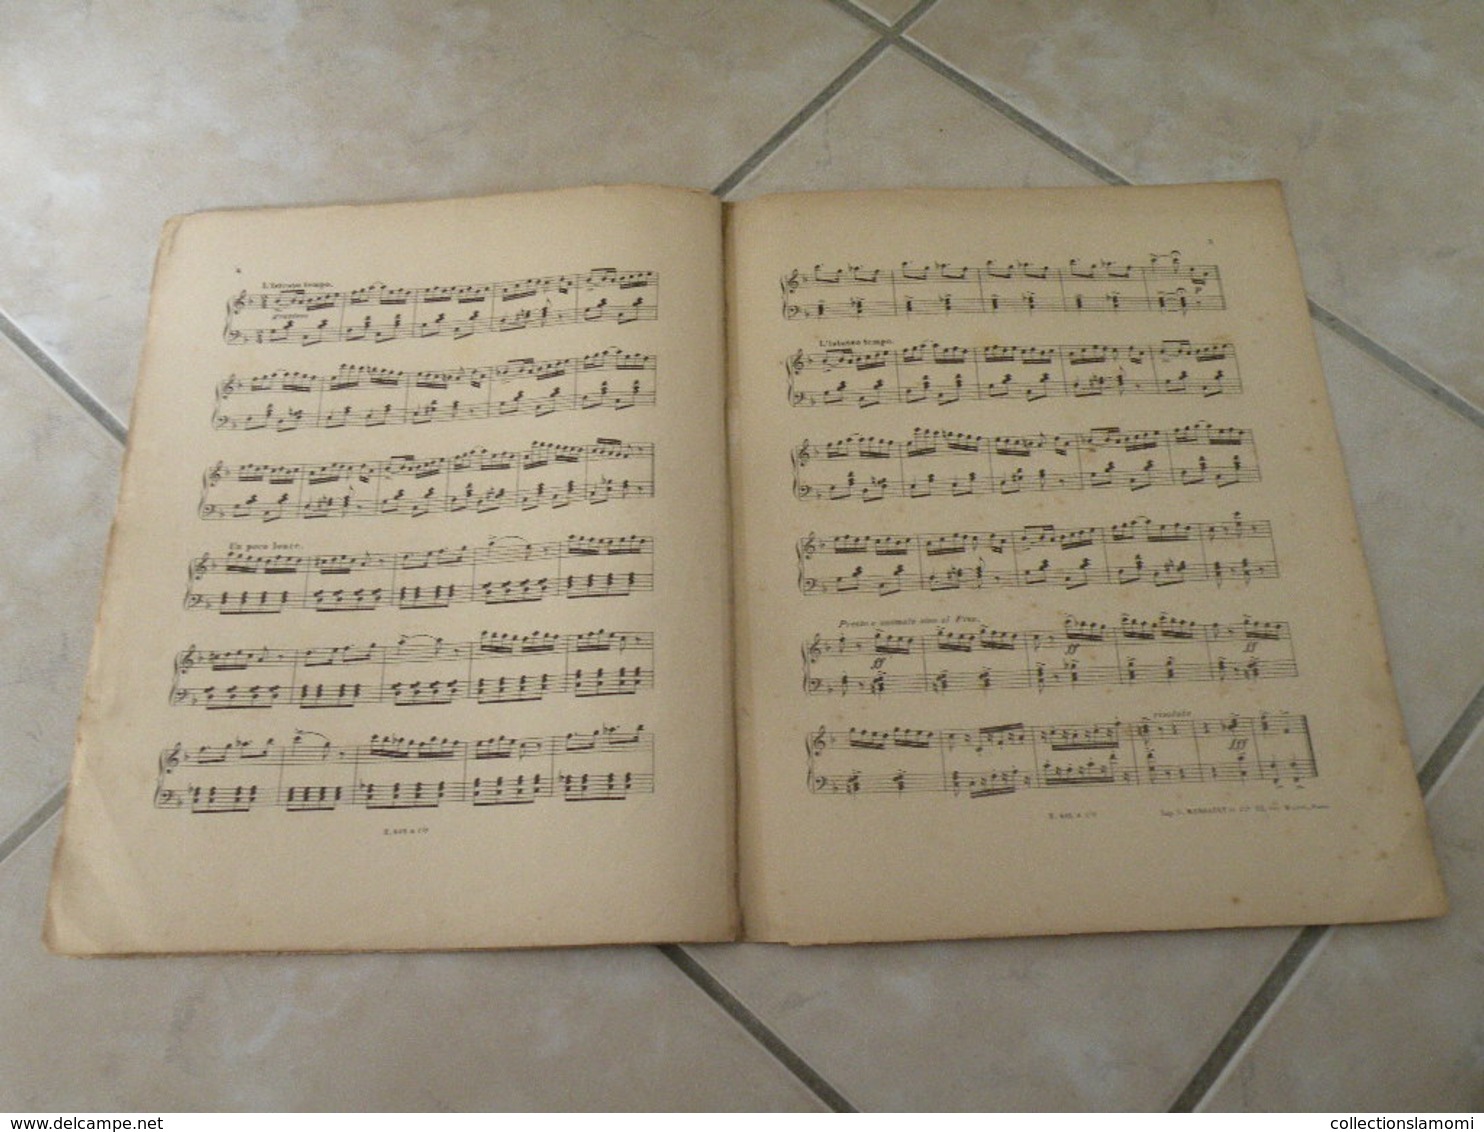 A La Cueillette -(Musique Marius Carman) - Partition (Piano)1900 - Tasteninstrumente